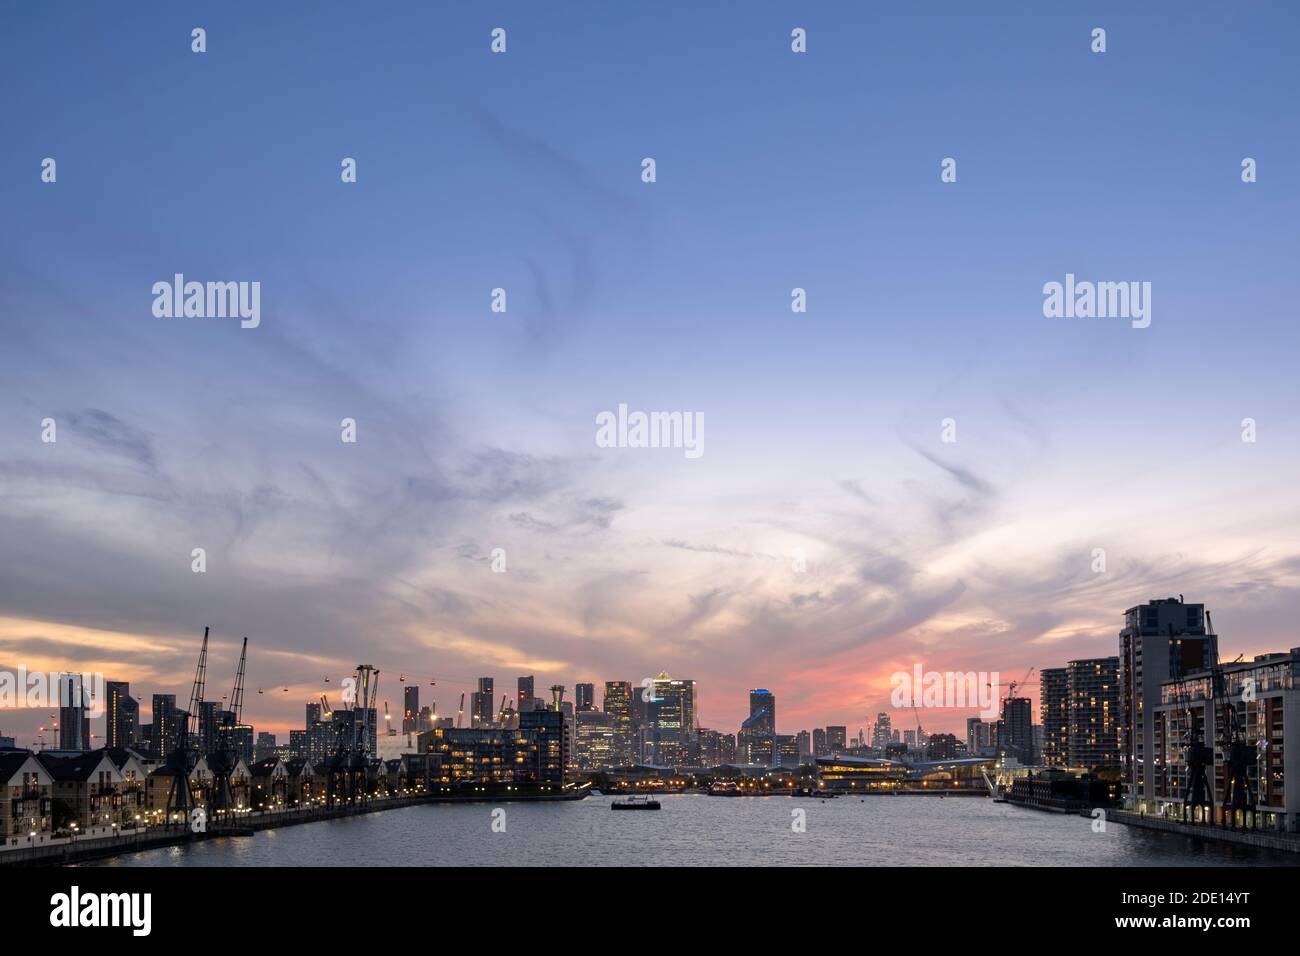 El horizonte de Londres al atardecer con Canary Wharf y los distritos financieros de la Ciudad de Londres, el teleférico Emirates y el muelle Victoria, Londres Foto de stock